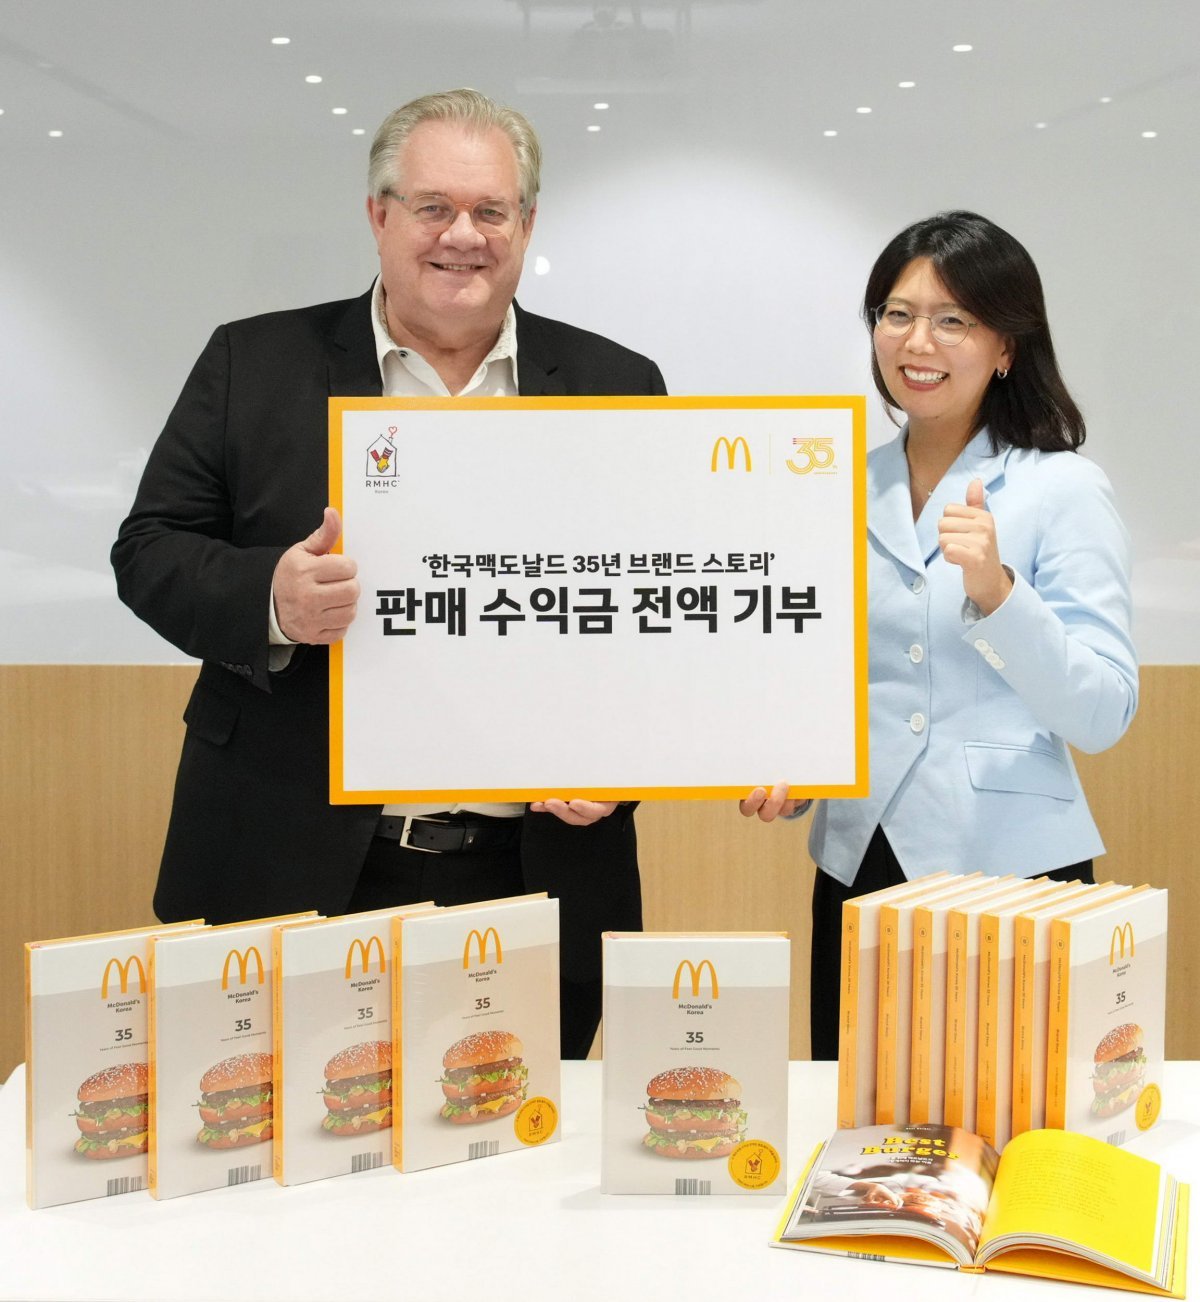 맥도날드가 창립 35주년을 기념해 출간한 사사 ‘한국맥도날드 35년 브랜드 스토리’의 판매 수익금 전액을 한국RMHC에 기부했다.